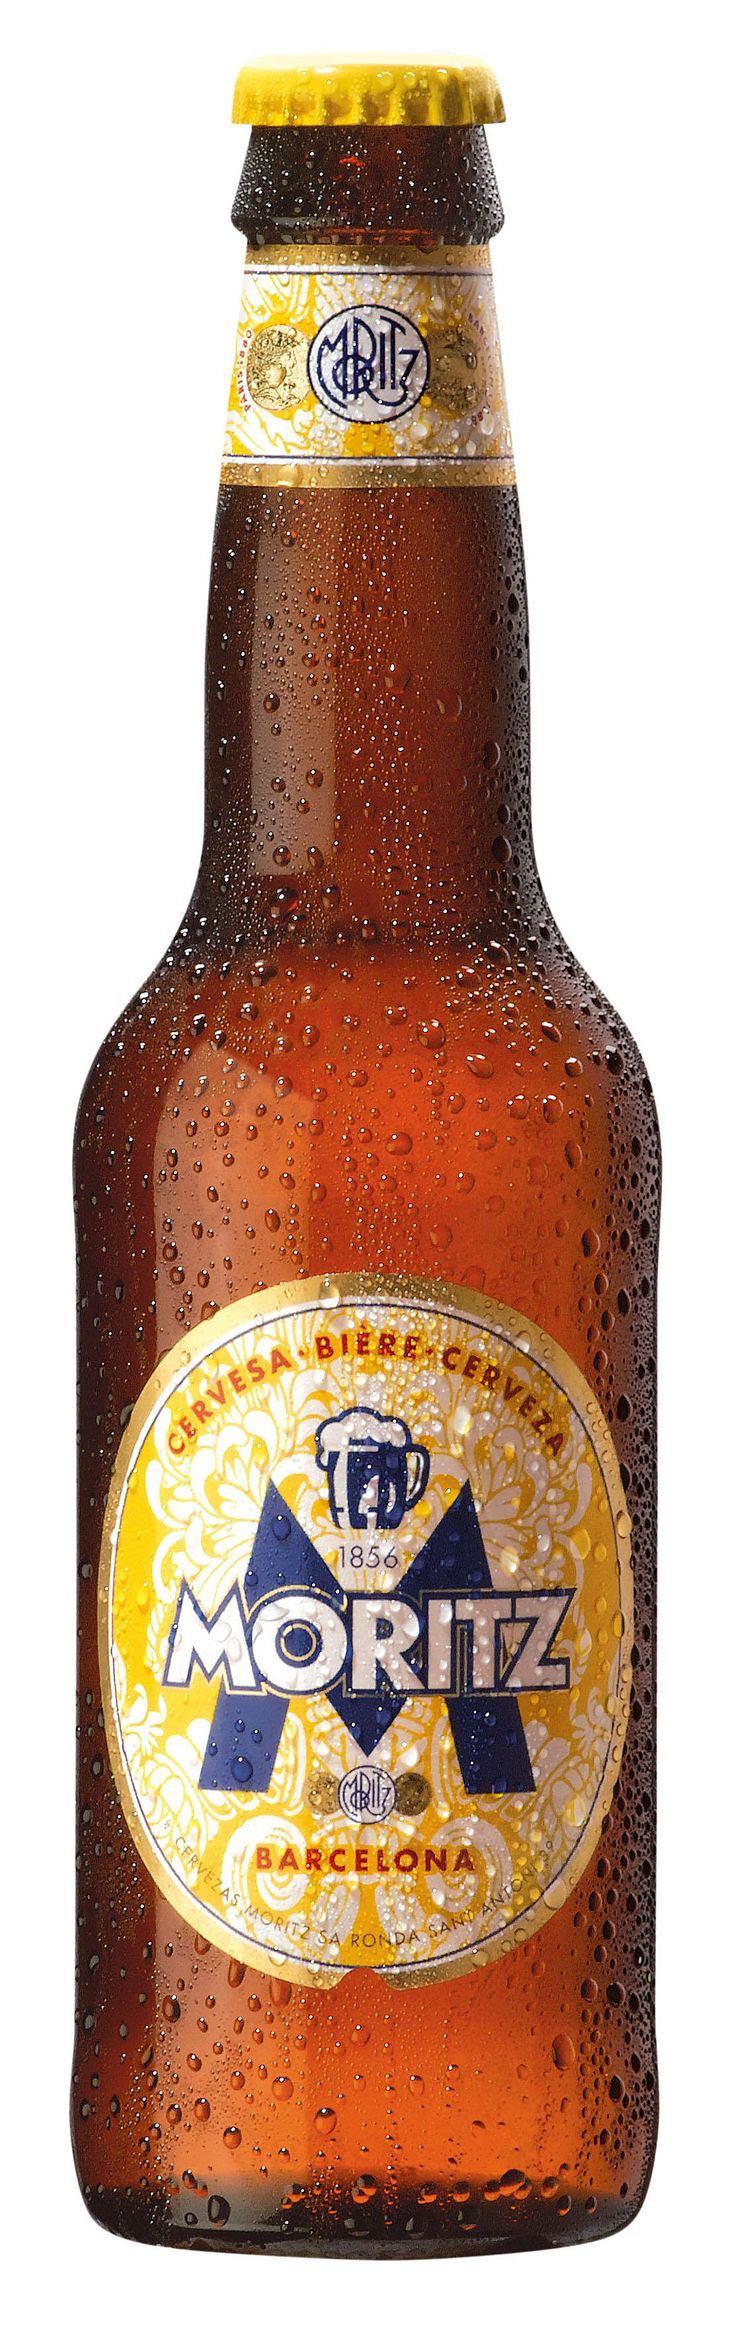 The Beer of Barcelona – nu i beställningssortimentet